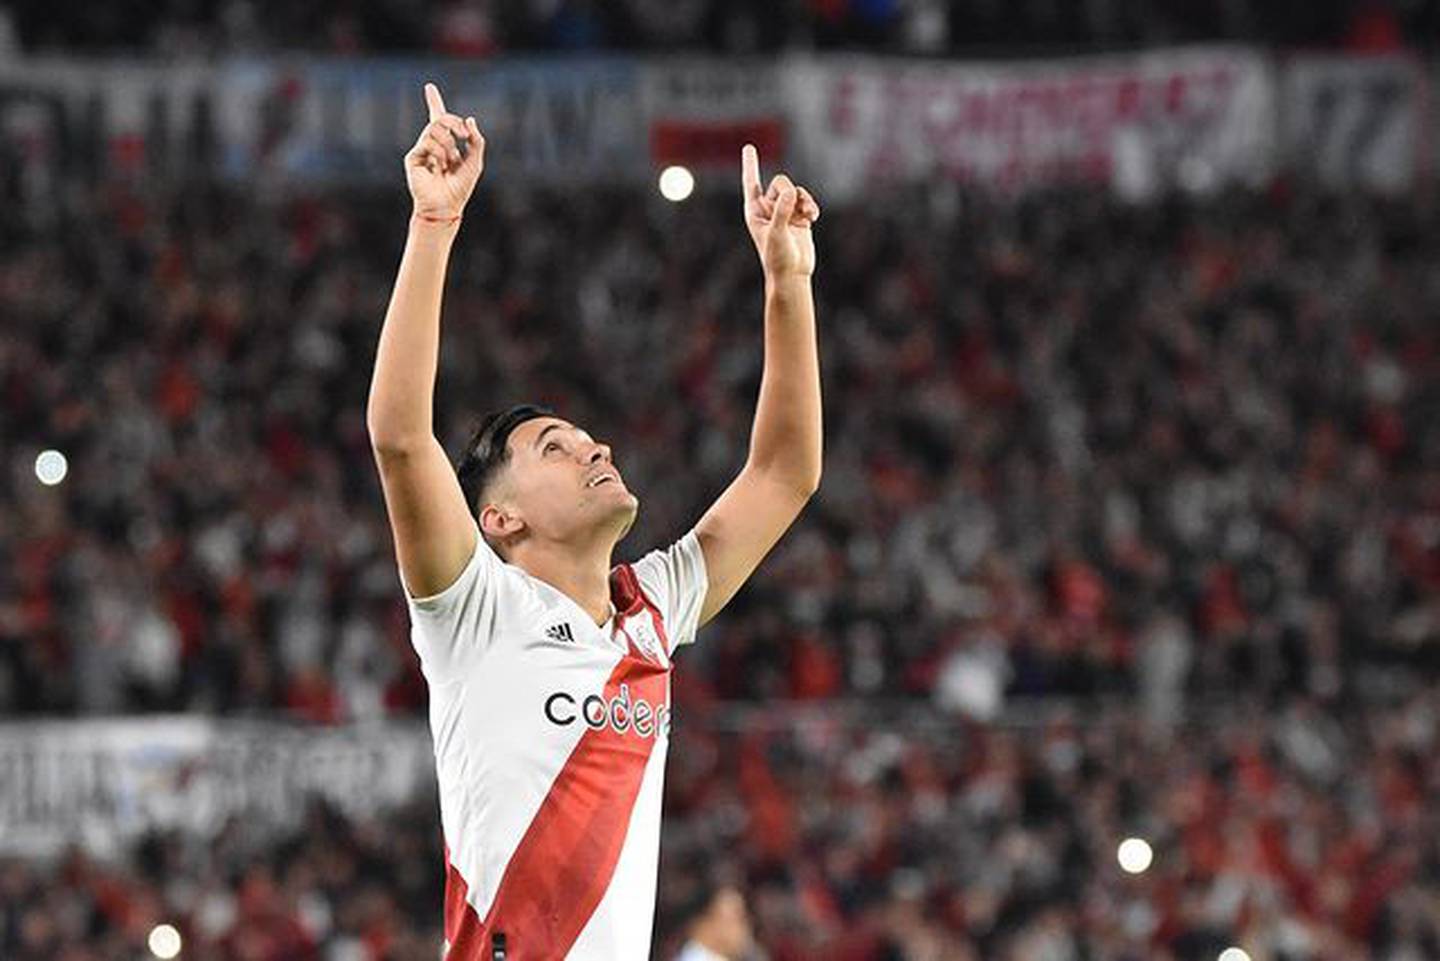 Pablo Solari en primer plano festeja un gol con River Plate en el estadio Monumental.